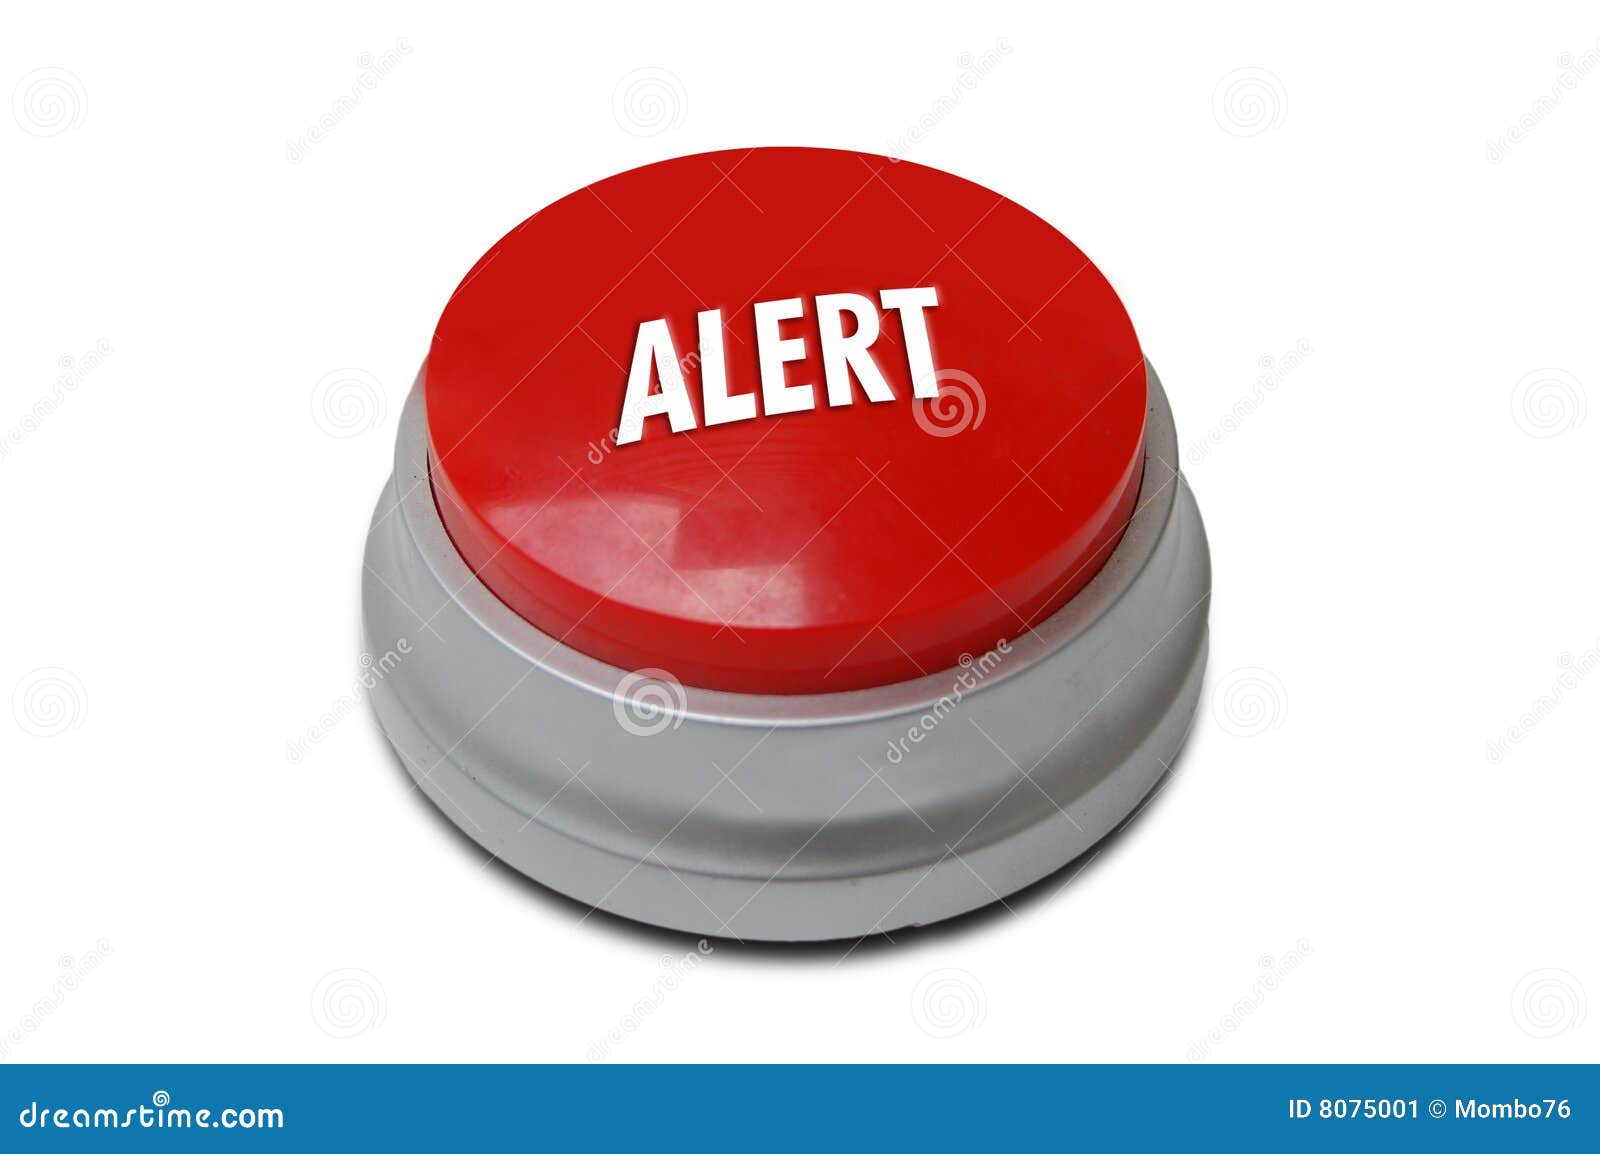 red alert button